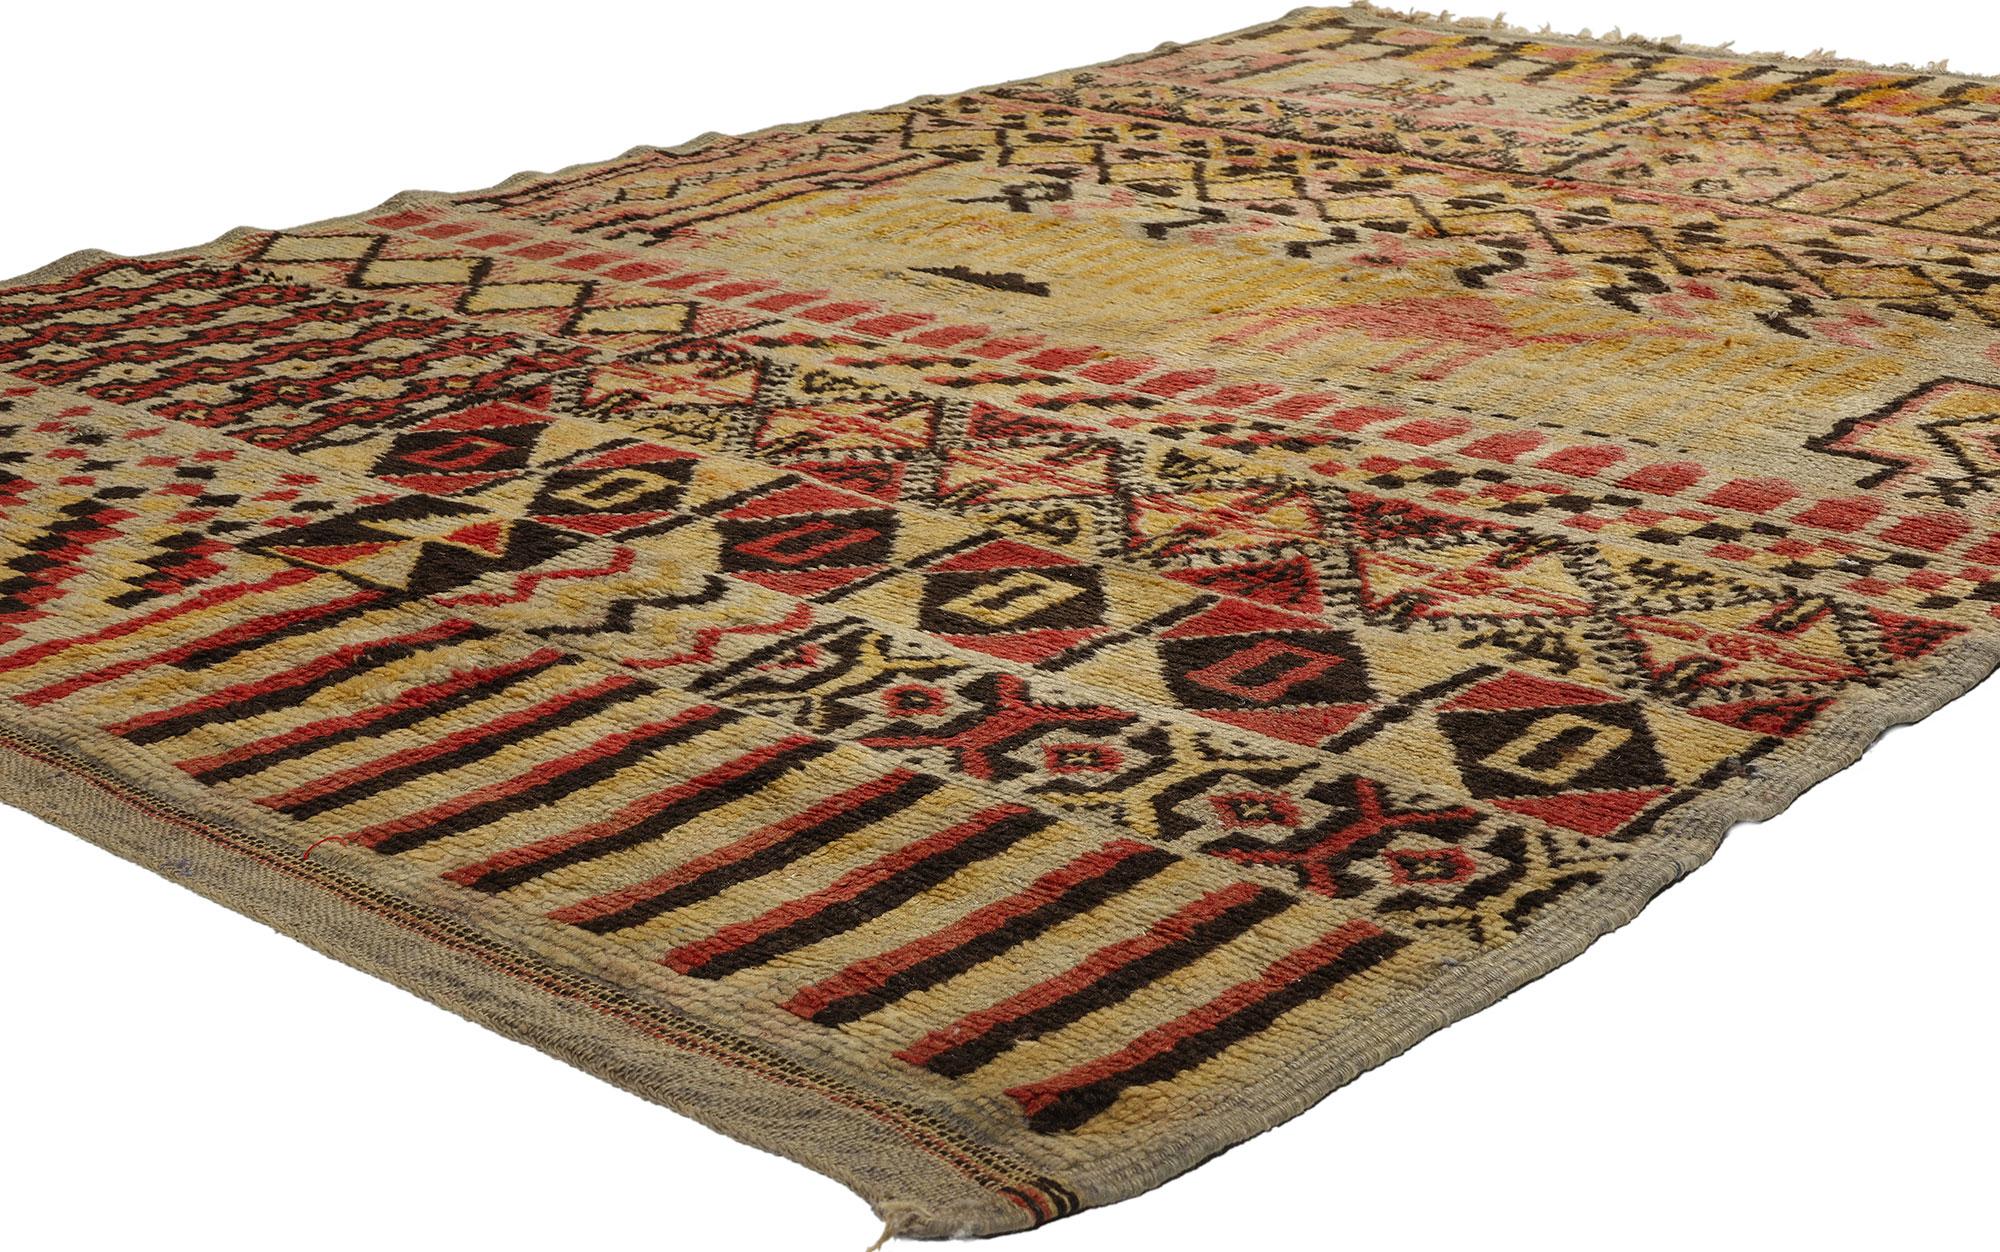 21726 Tapis marocain vintage Boujad Pictorial, 05'03 x 08'02. Les tapis picturaux marocains Boujad, originaires de la région de Boujad au Maroc, sont une forme distincte d'art du tapis caractérisée par l'incorporation d'éléments figuratifs tels que